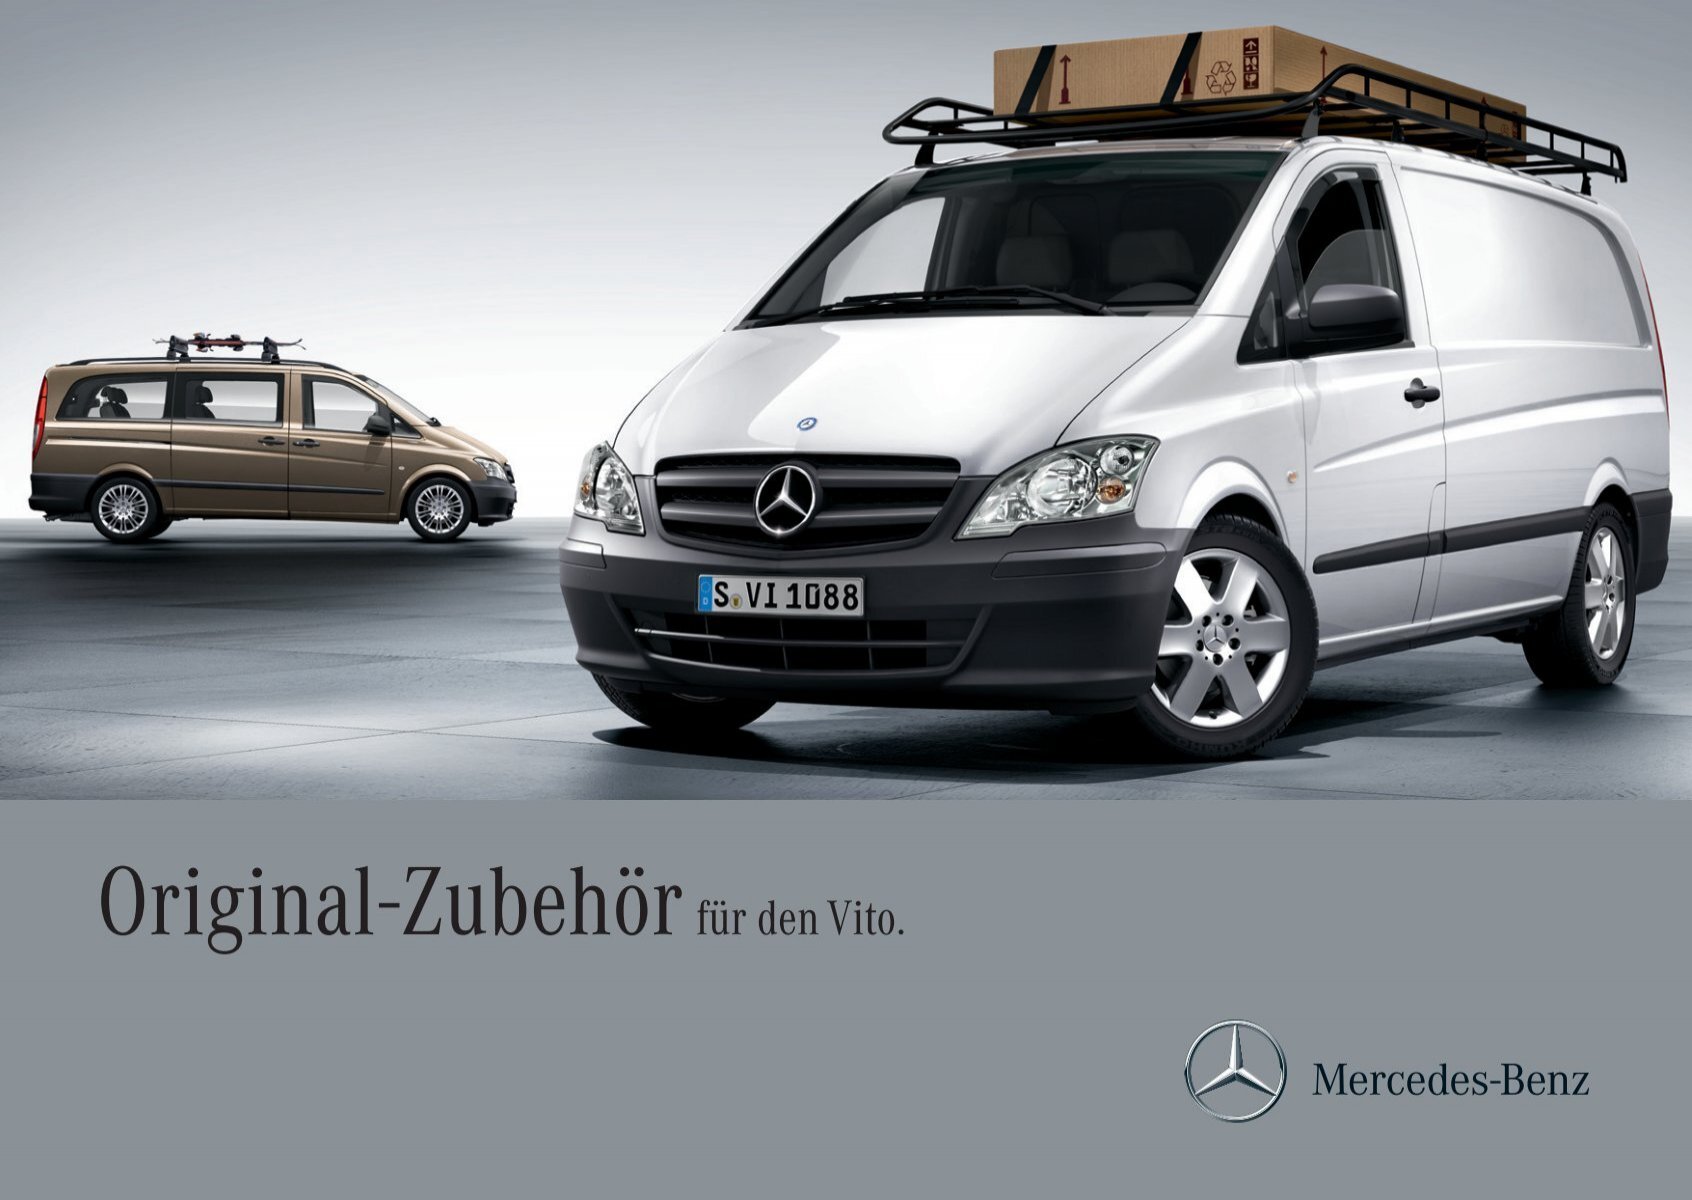 Original-Zubehör für den Vito. - Mercedes-Benz Österreich